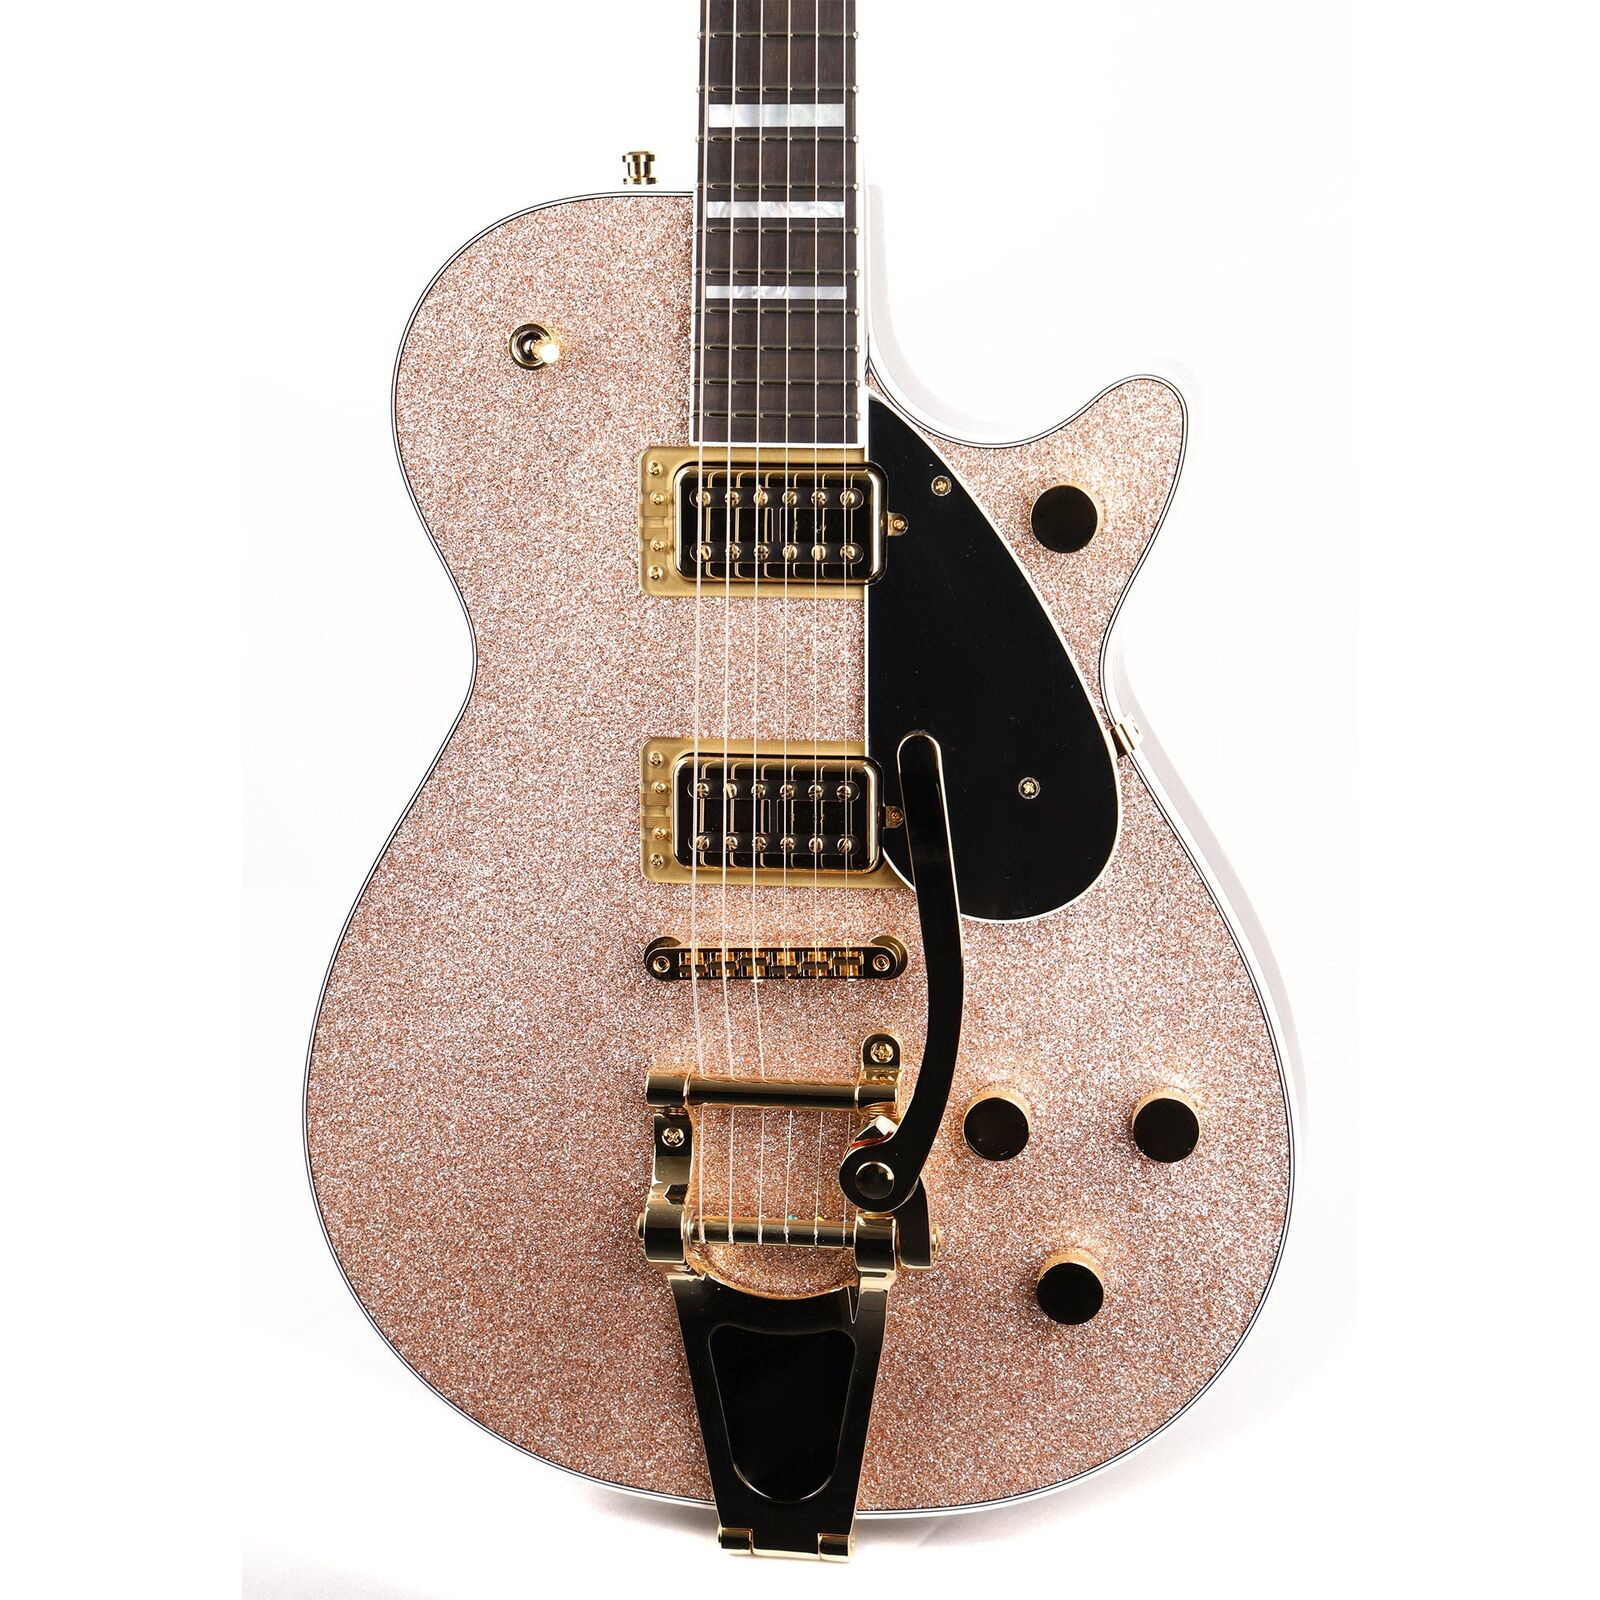 G6229TG限定版プレーヤーエディションスパークルジェットBTシャンパンスパークルエレクトリックギターと同じように写真